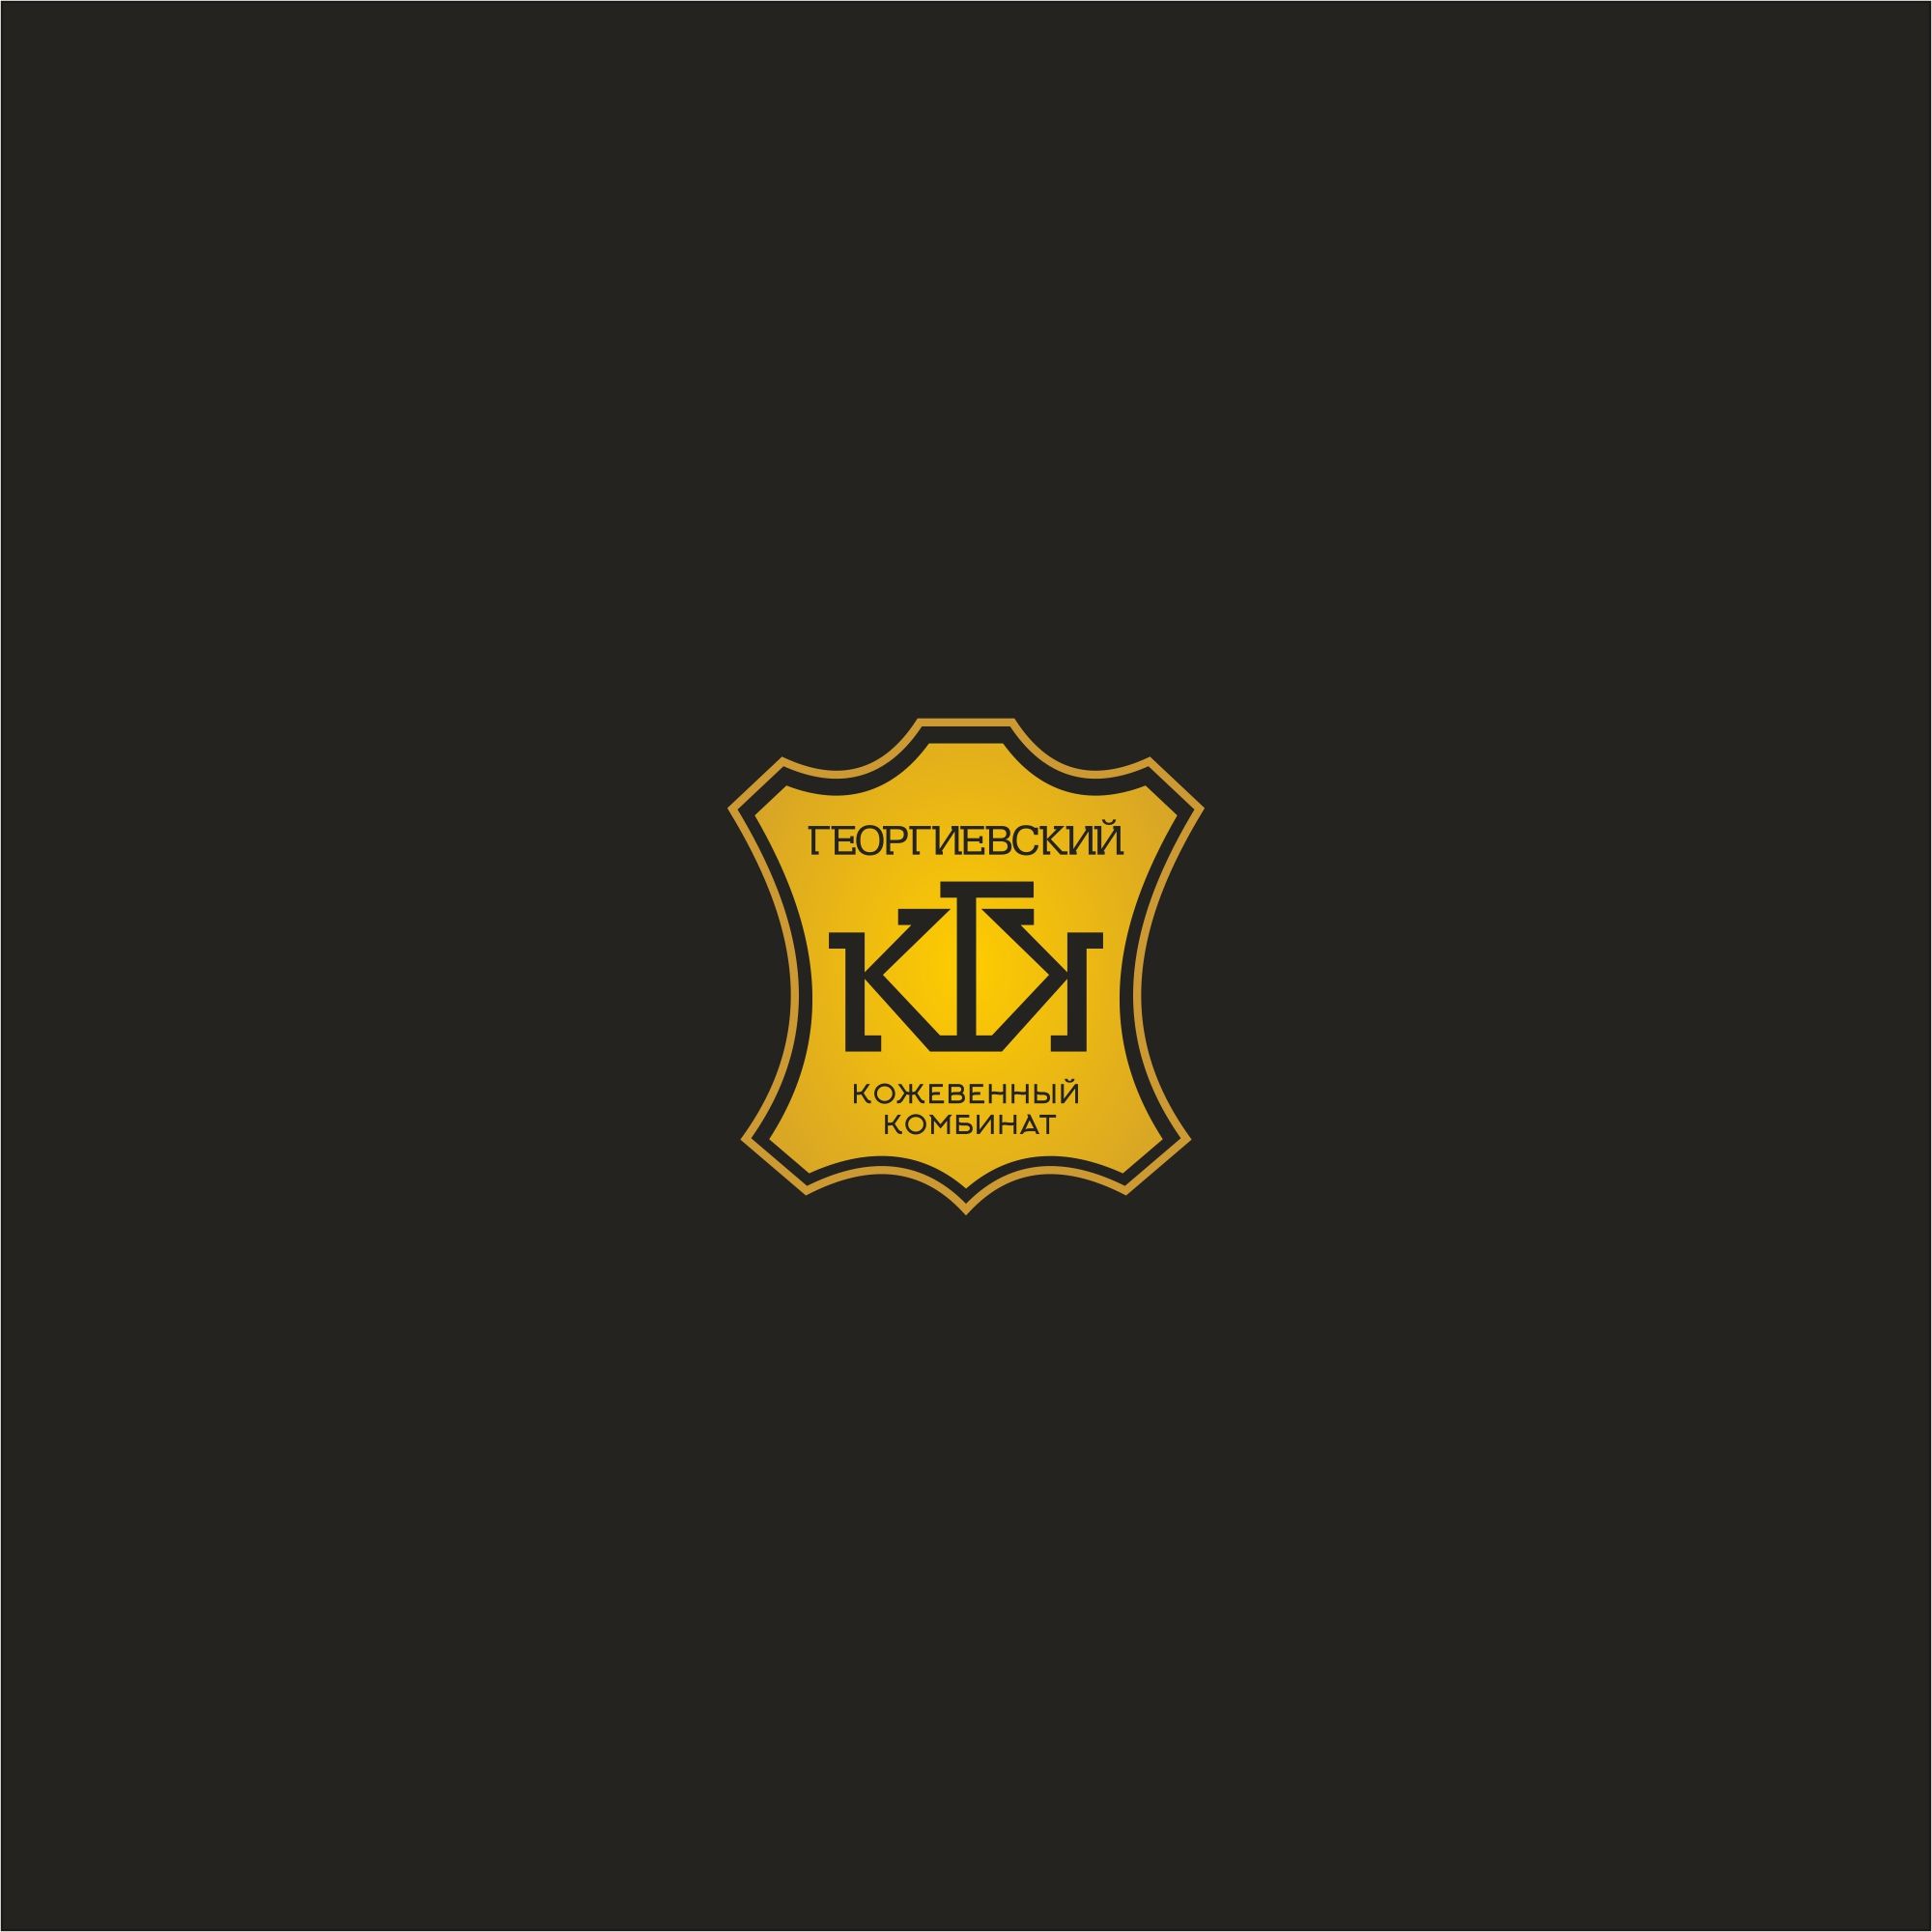 Лого и фирменный стиль для Георгиевский кожевенный комбинат - дизайнер serz4868